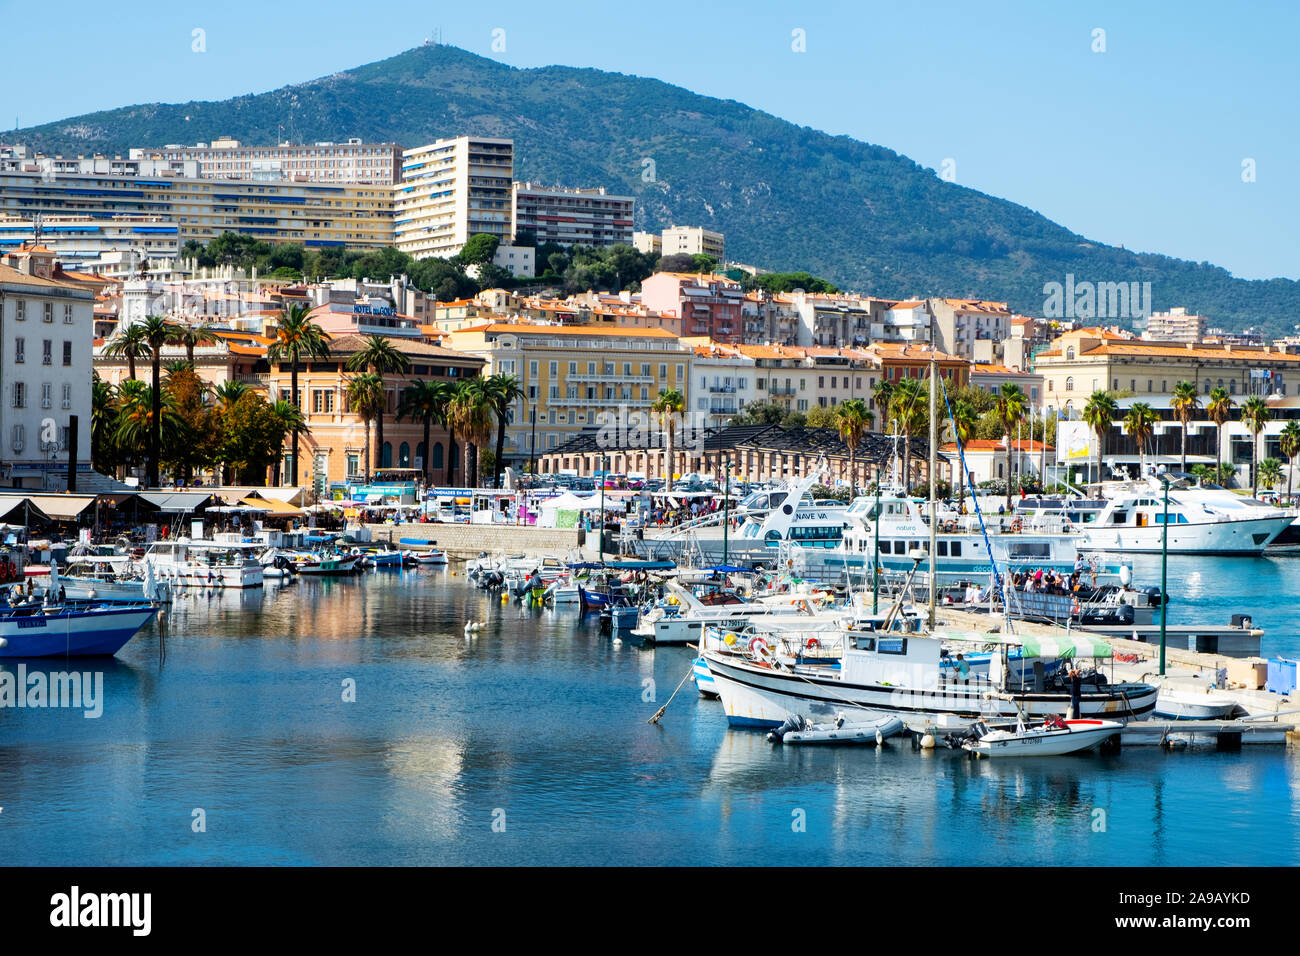 AJACCIO, Frankreich - 20. SEPTEMBER 2018: Ein Blick über den Hafen von Ajaccio, einer der wichtigsten Häfen von Korsika Stockfoto